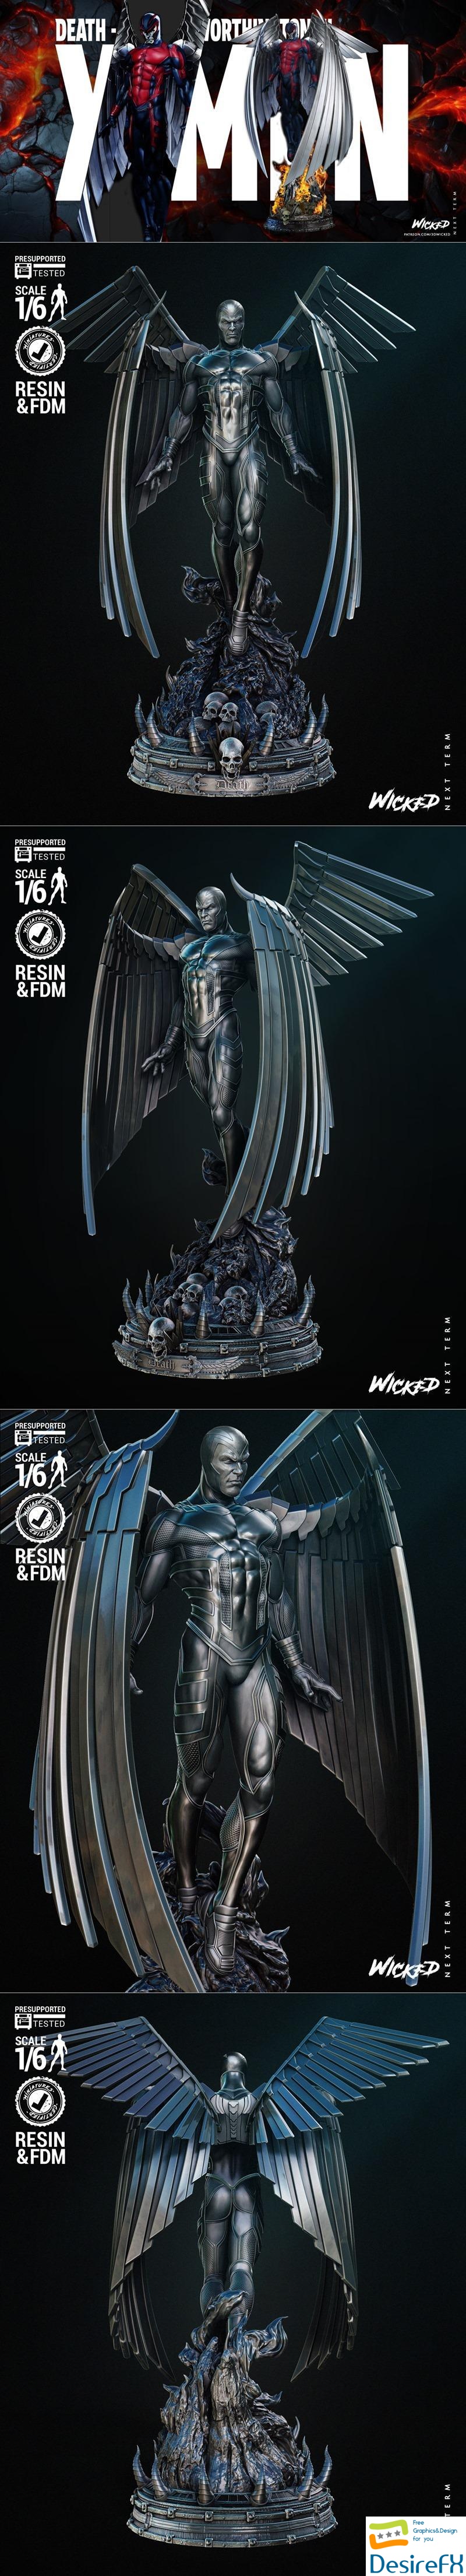 Wicked - Archangel Sculpture 3D Print